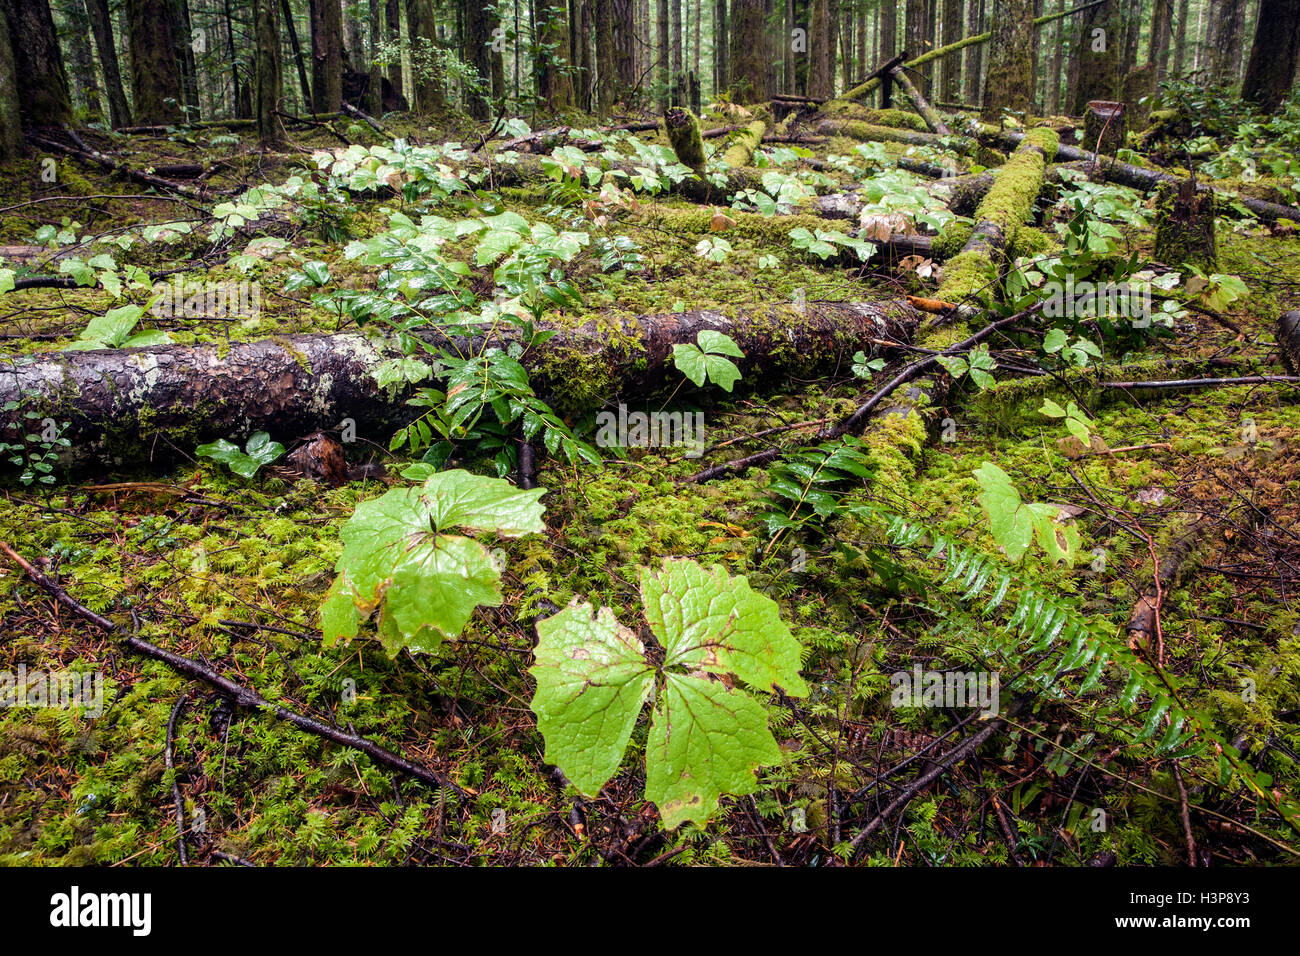 Trillium de l'ouest à même le sol forestier - Parc provincial d'Elk Falls - Campbell River, Vancouver Island, British Columbia, Canada Banque D'Images